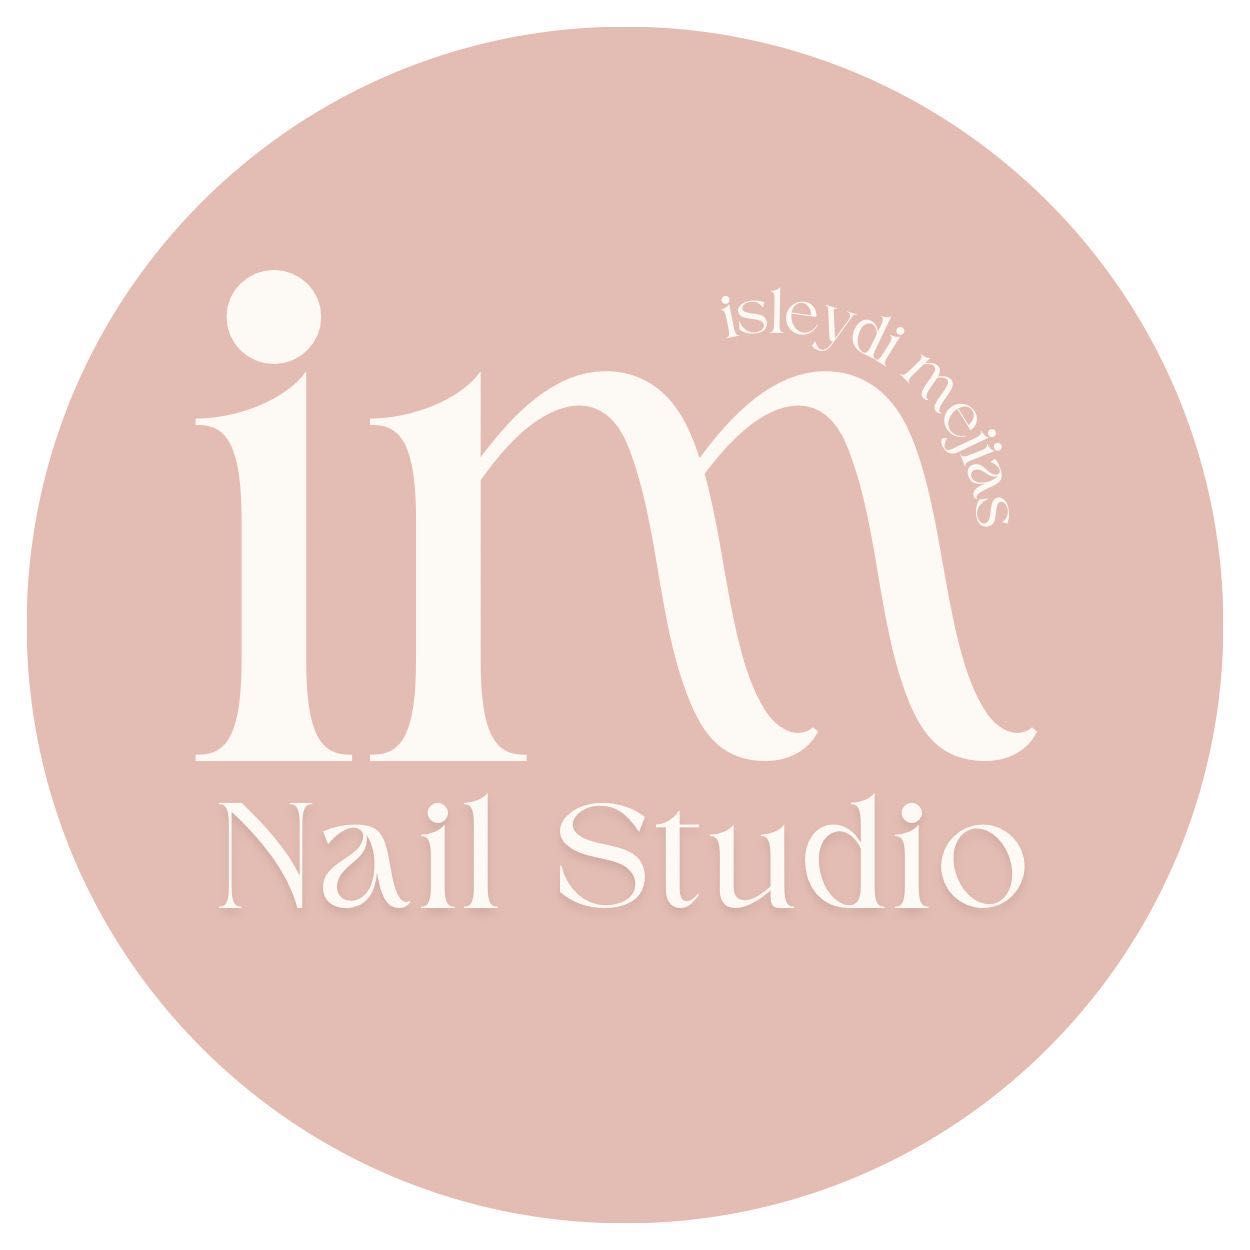 Im.nail studio, 15100 NW 67th Ave #110, Miami Lakes, FL 33014, suite 119, Miami Lakes, 33014